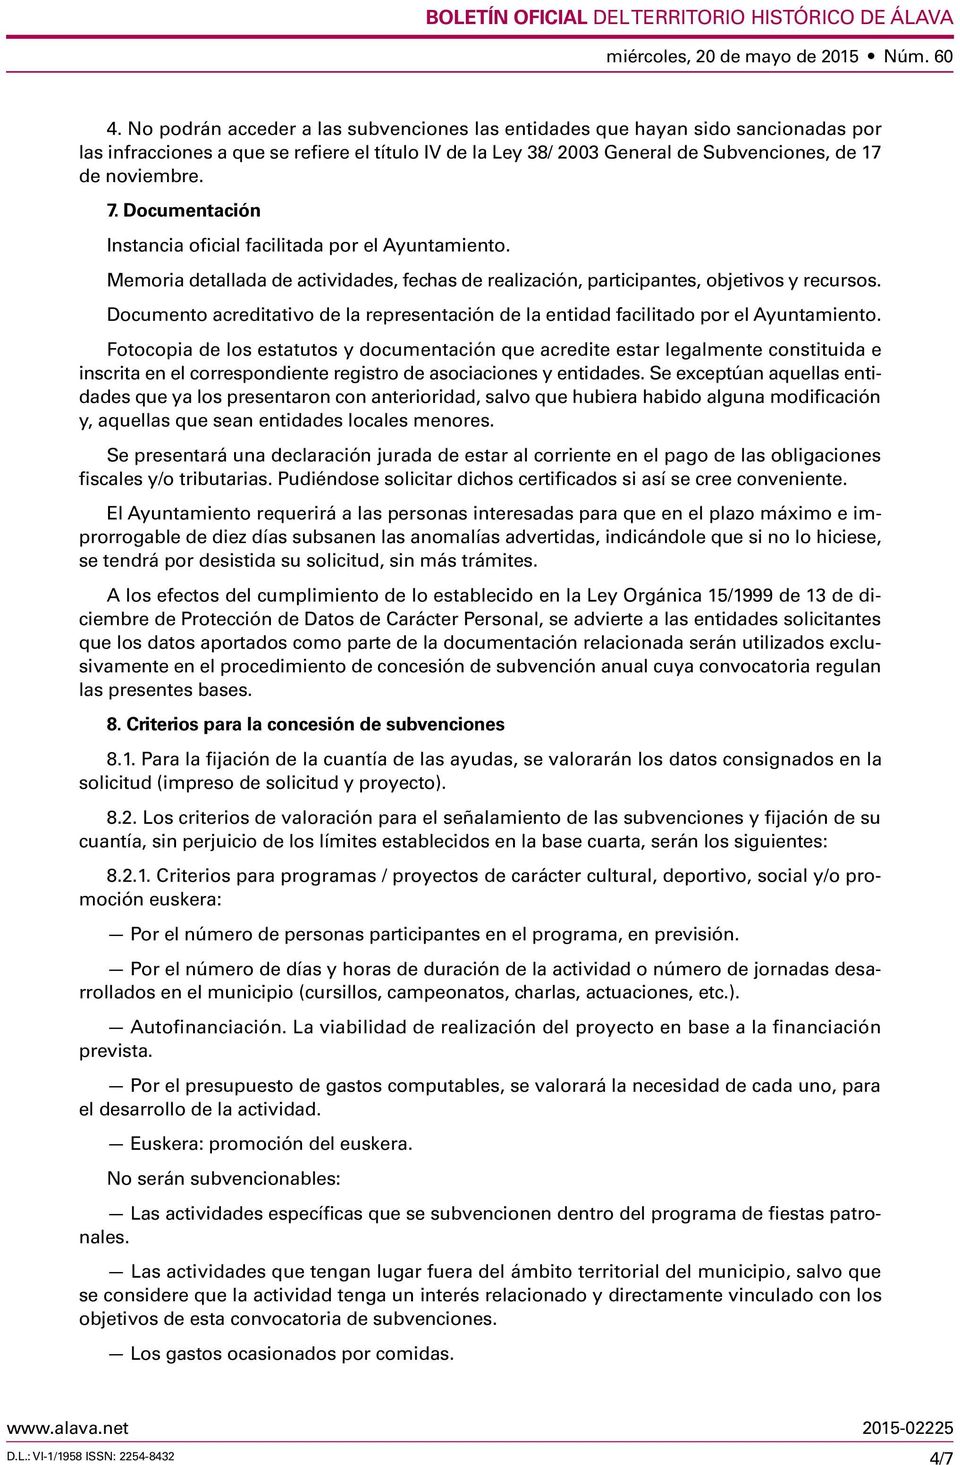 Documento acreditativo de la representación de la entidad facilitado por el Ayuntamiento.